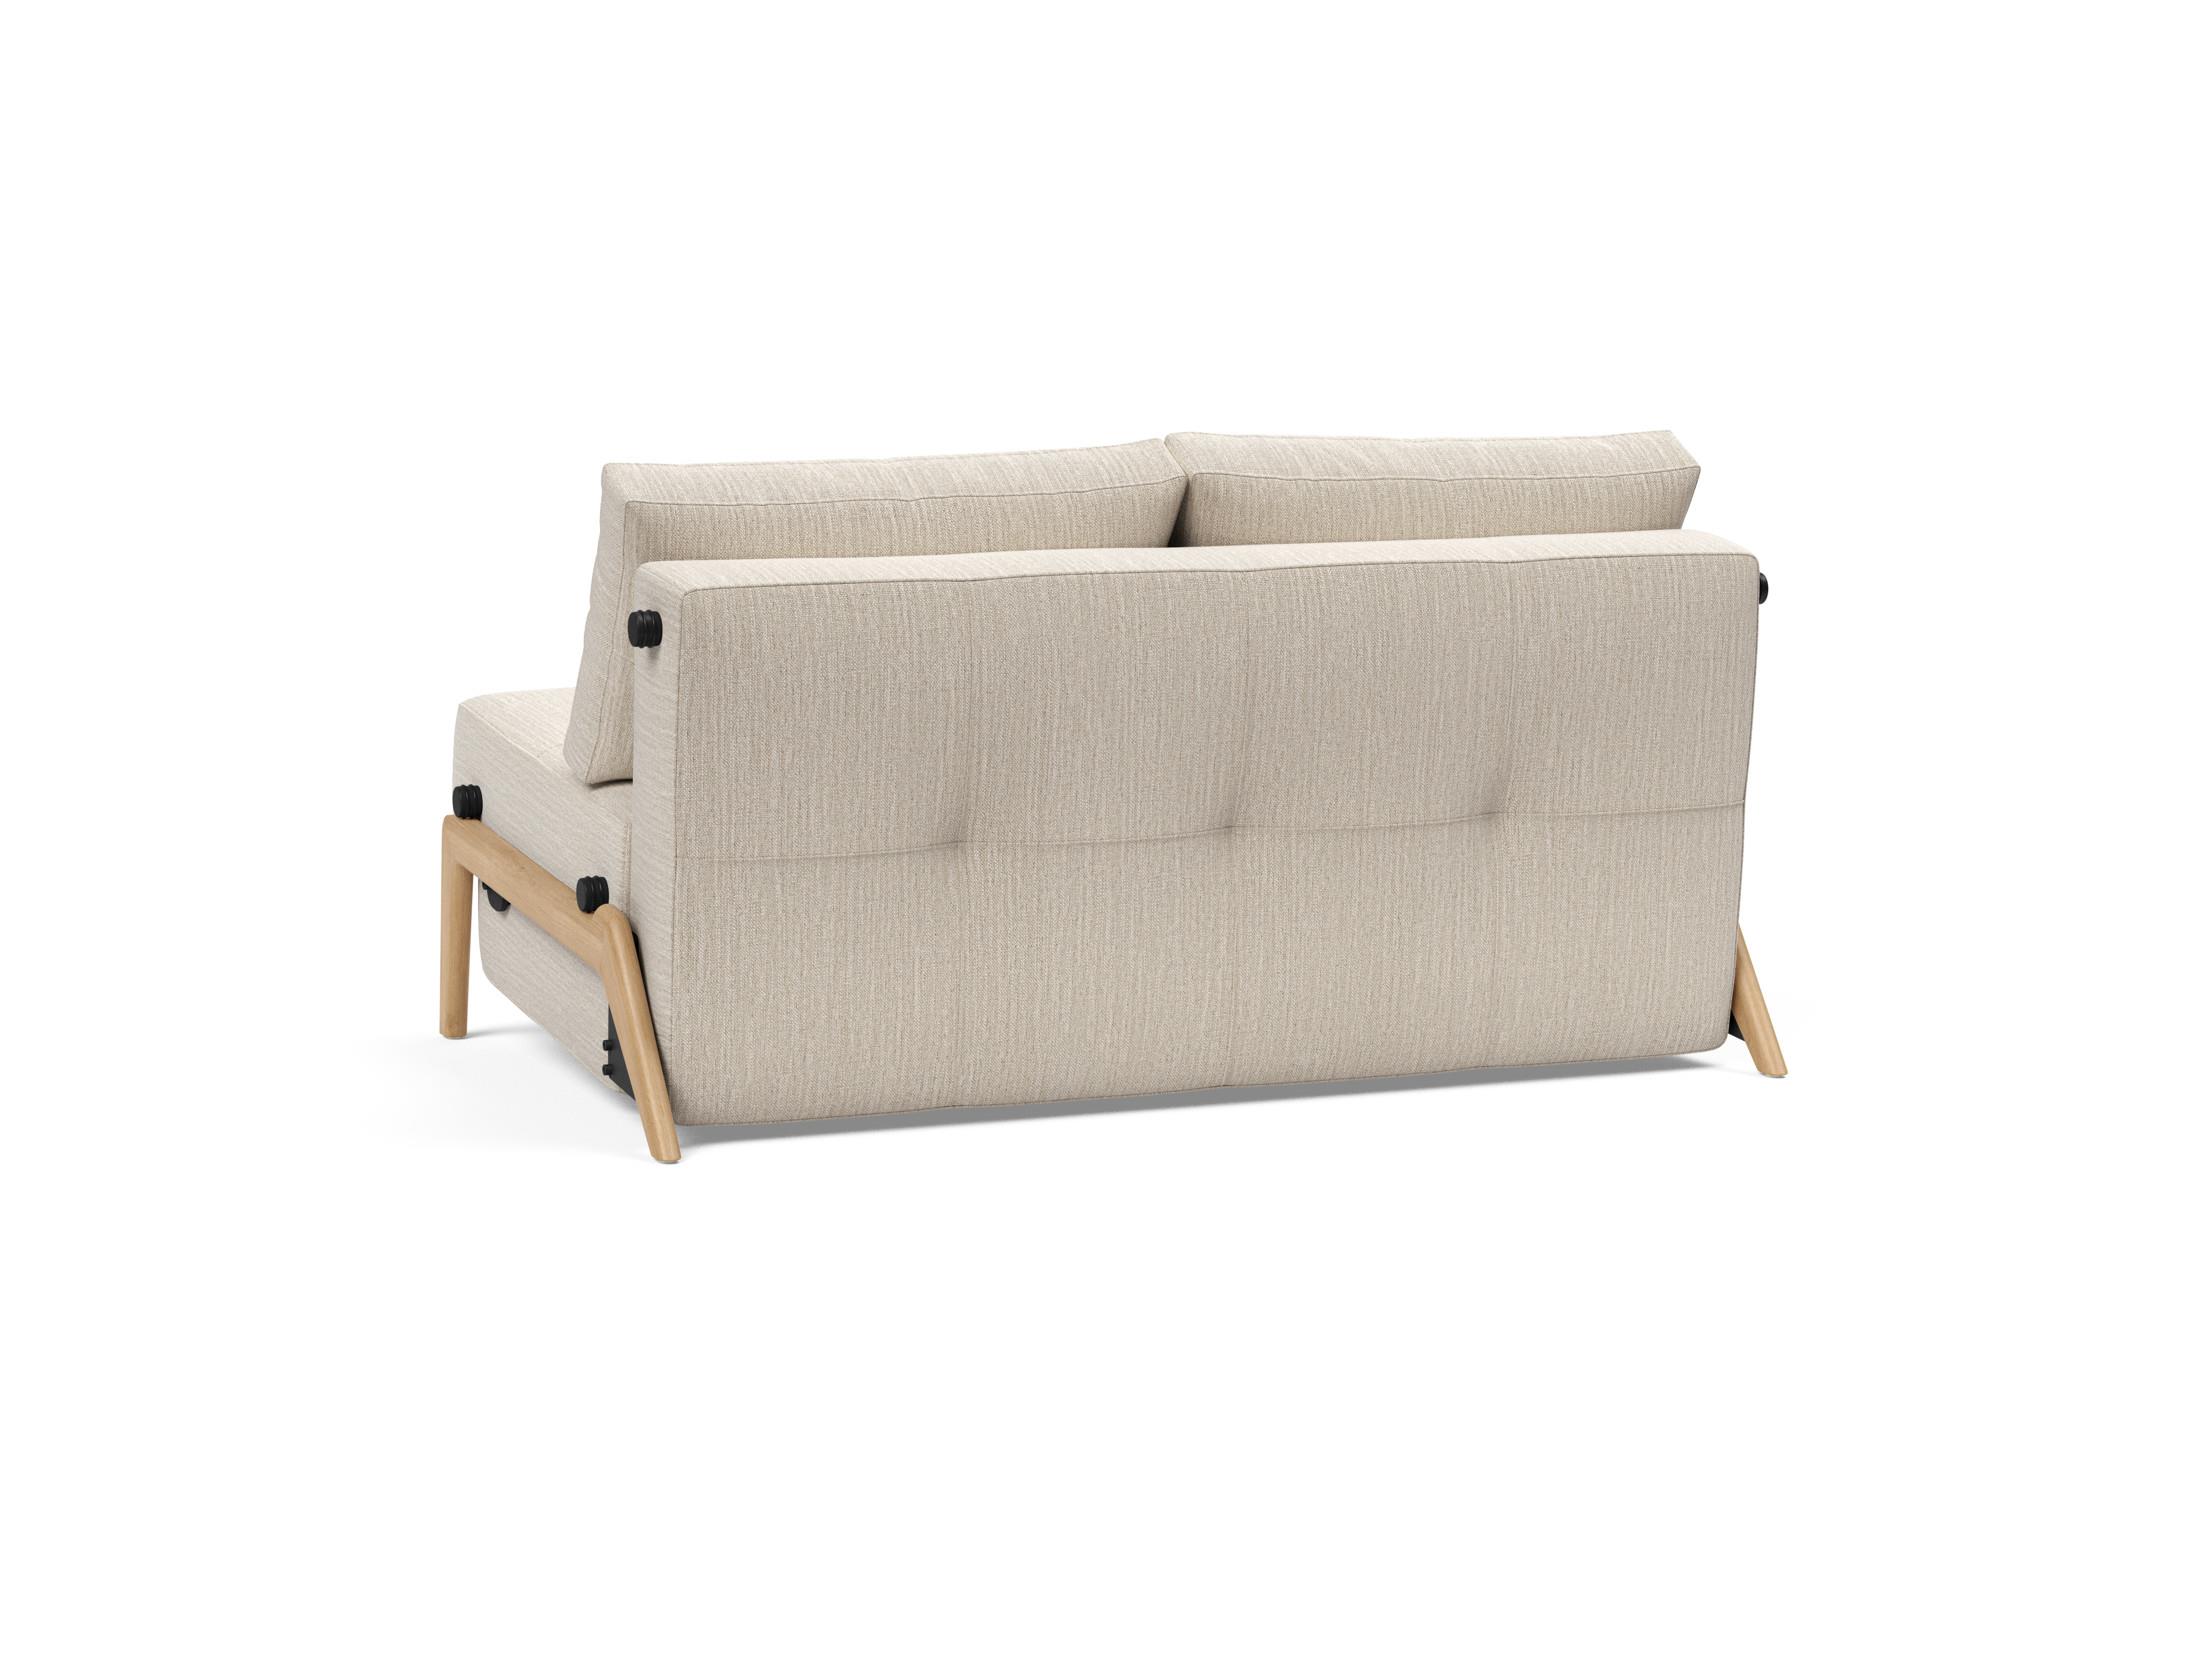 Cubed 140. Диван - Cubed 160 Wood Sofa Bed. Innovation Cubed 160 528 Wood. Innovation Cubed 140 Wood. Кресло-кровать м182-02 универсальное.